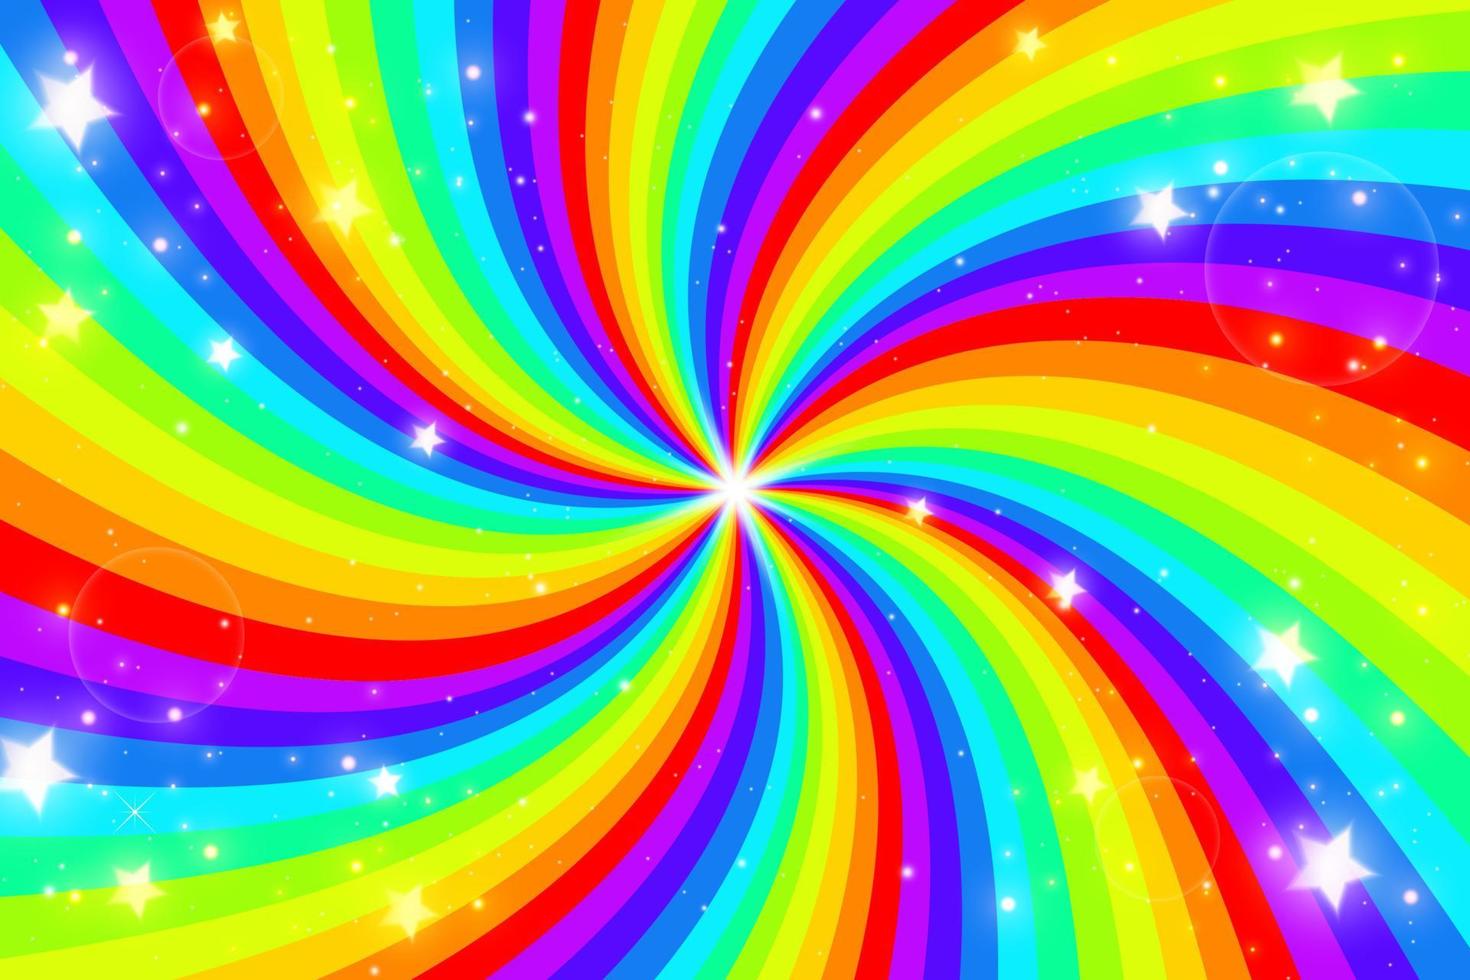 fondo de remolino de arco iris con estrellas. arco iris de gradiente radial de espiral retorcida. ilustración vectorial vector